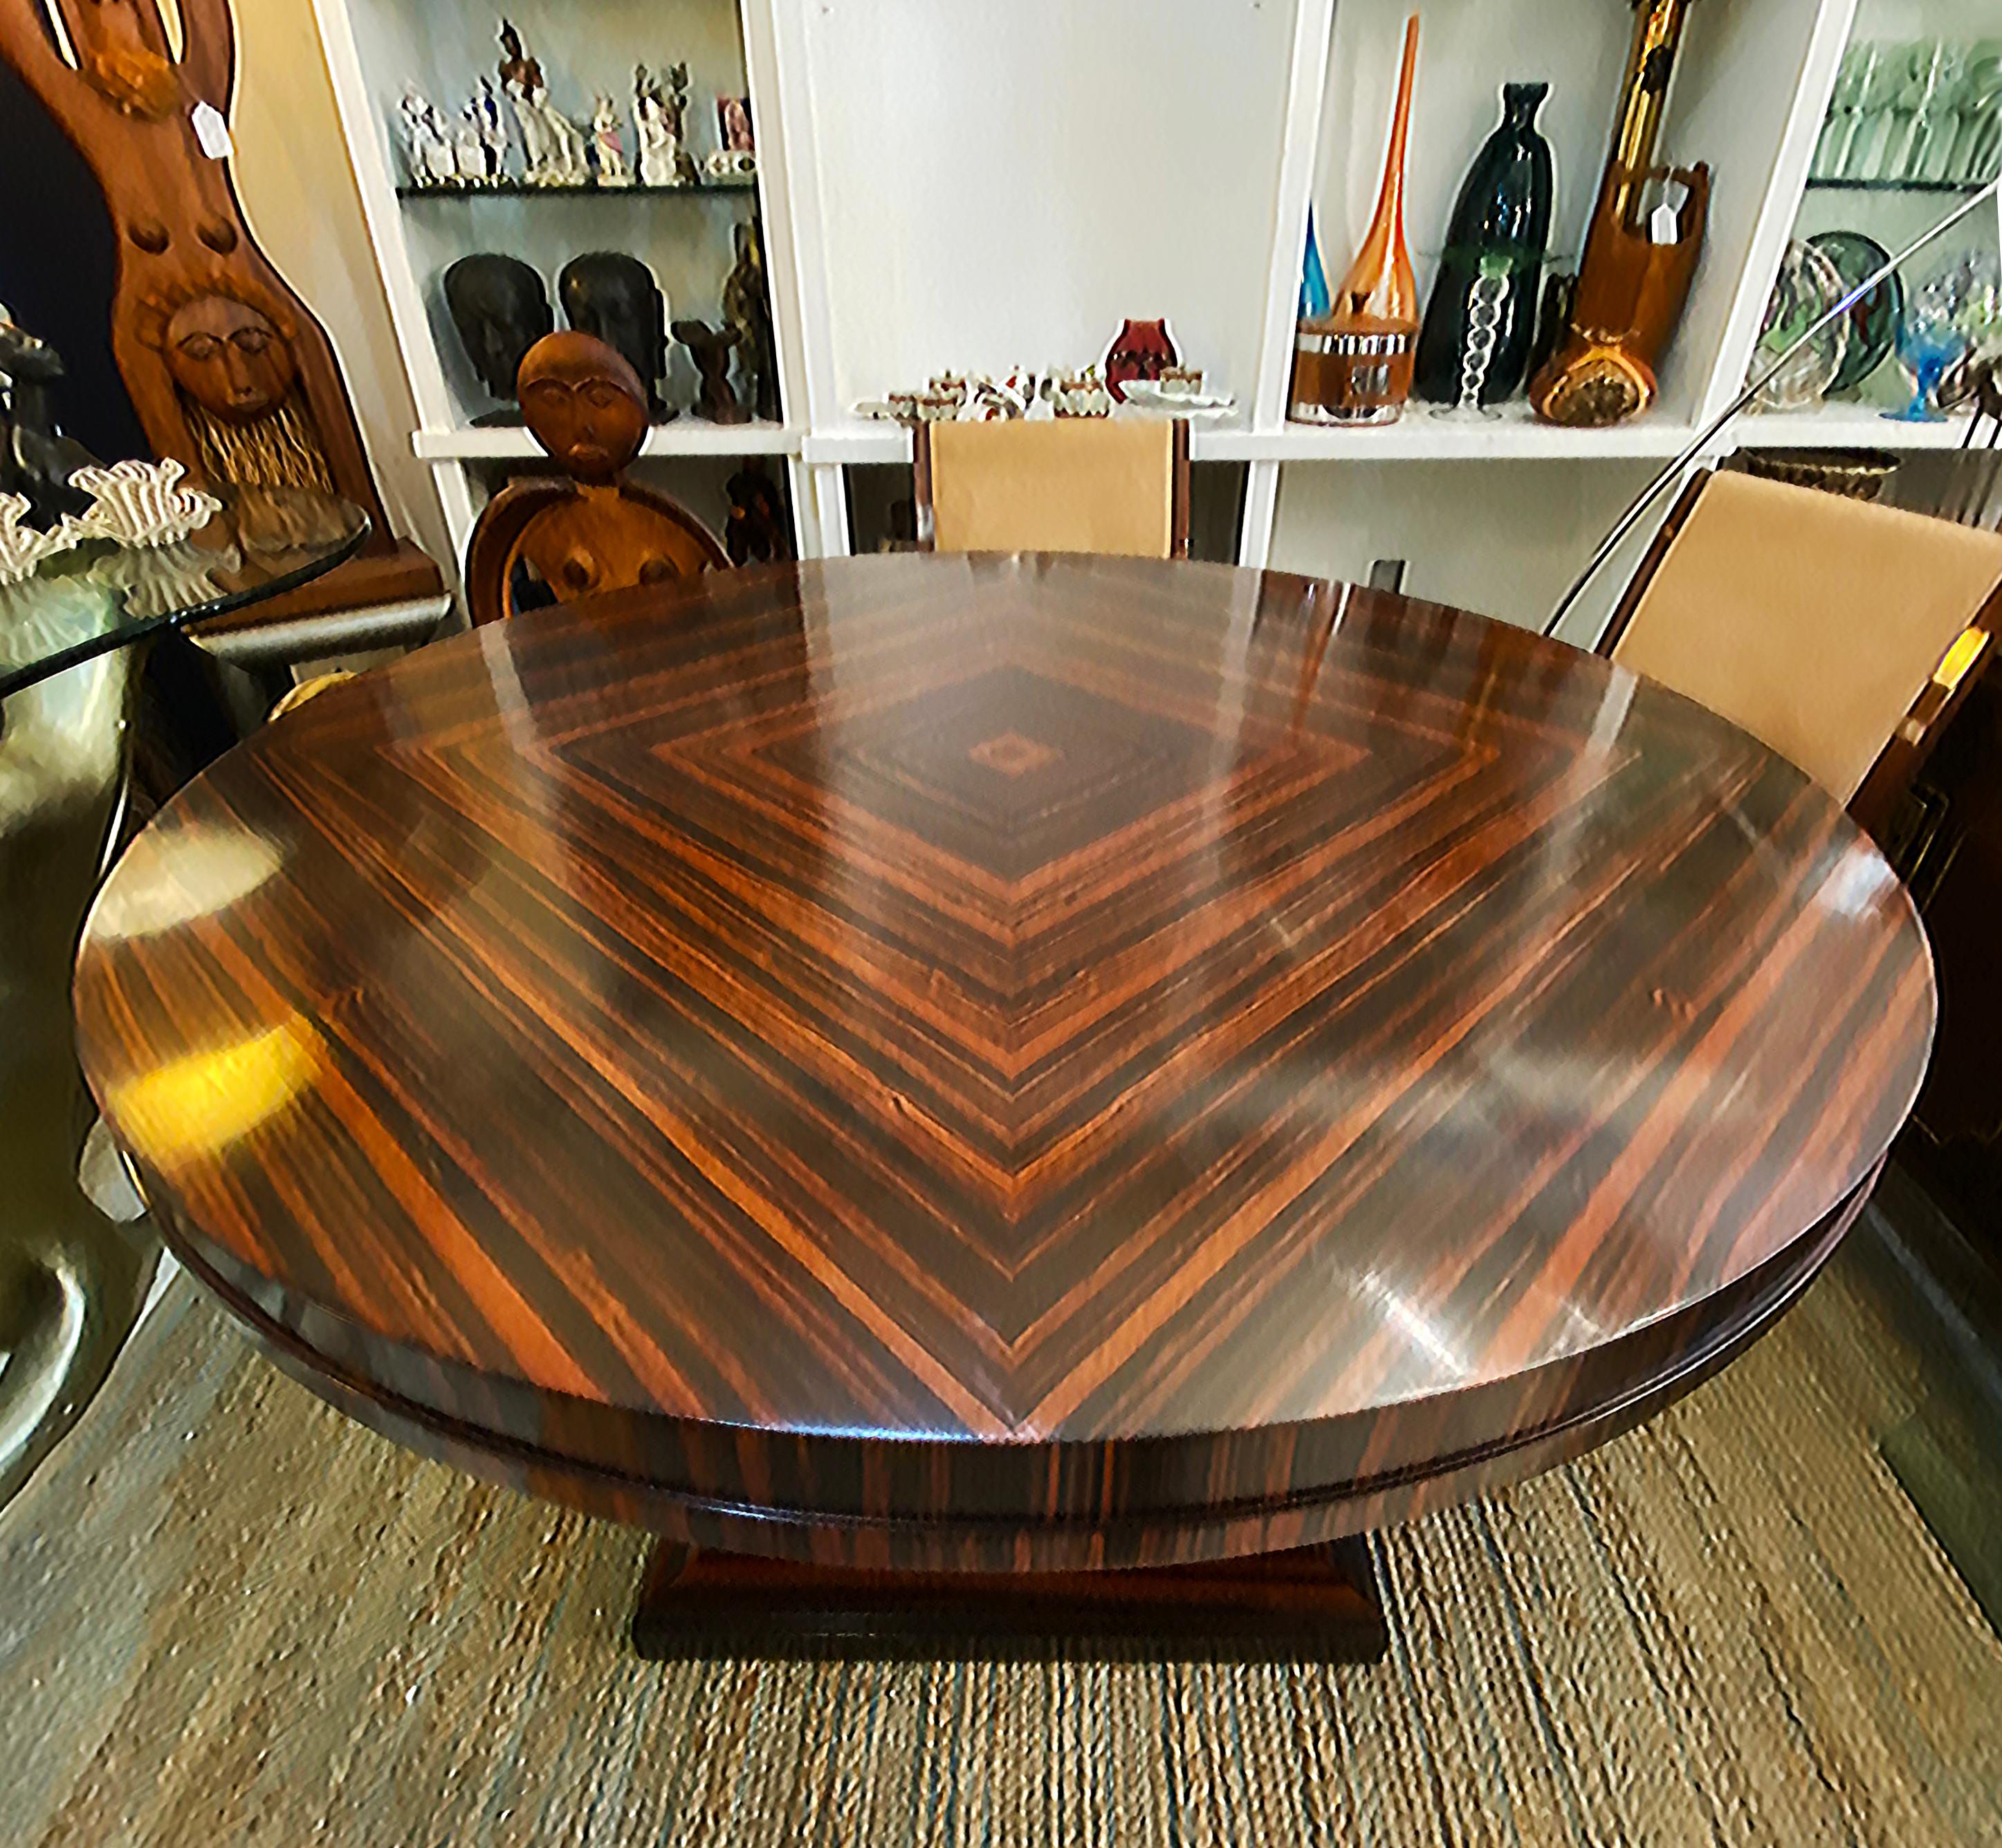 Art Deco Makassar Ebenholz Runde Dining Center Tisch, schön furniert Holz

Zum Verkauf angeboten wird ein  Wunderschöner runder Tisch aus gemasertem Makassar-Ebenholz als Esstisch. Der Tisch ist im Art-Déco-Stil gehalten und besteht aus einem